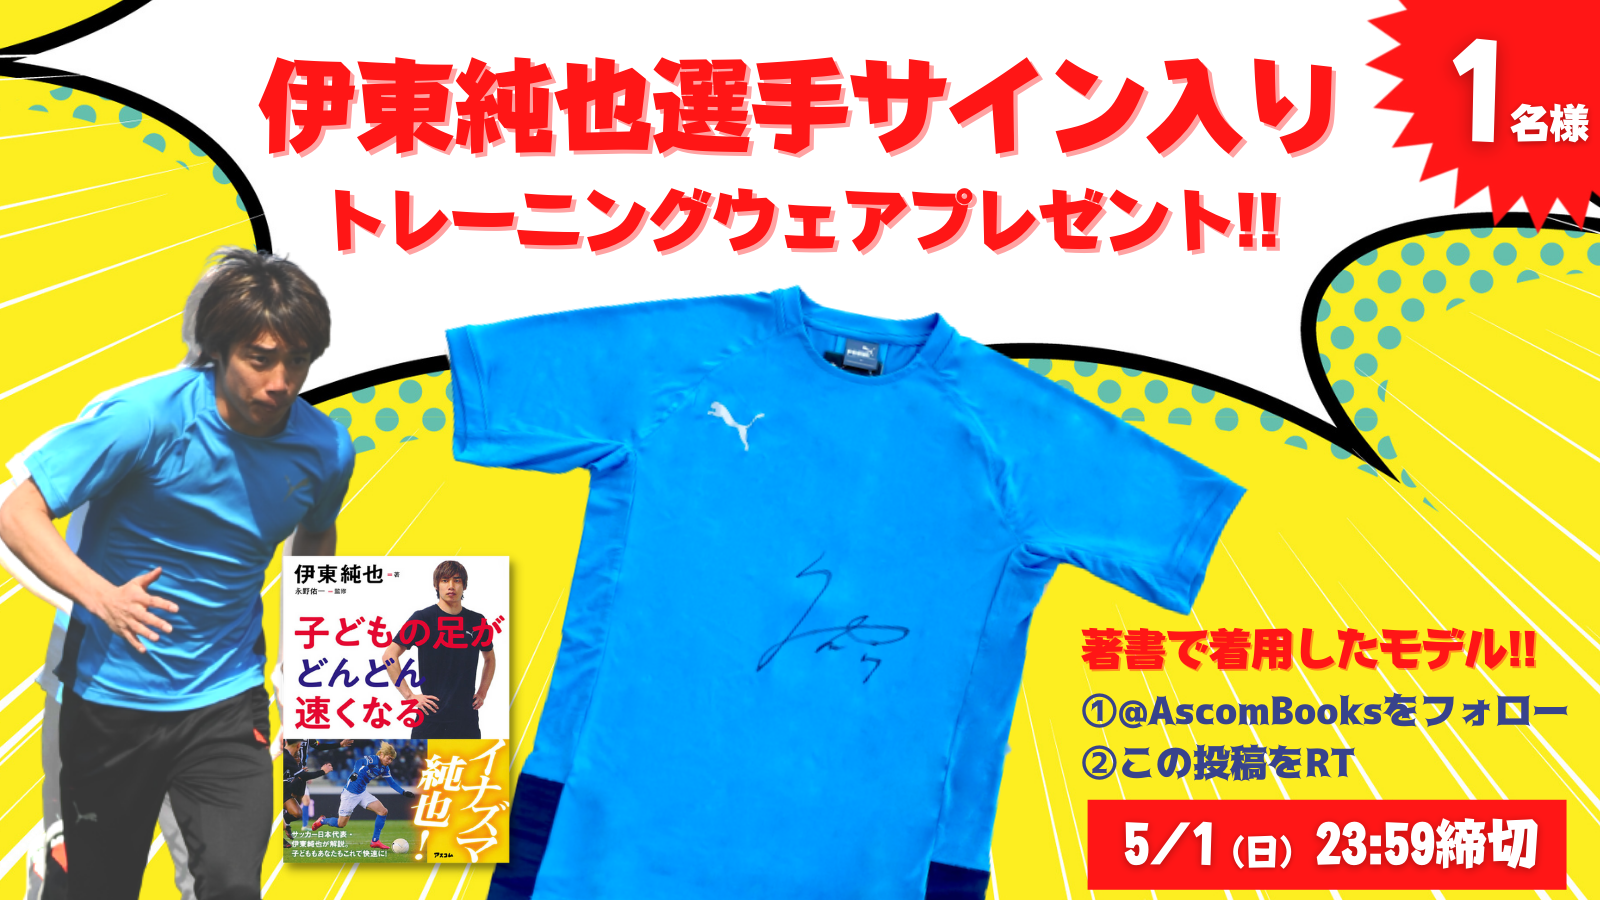 サッカー日本代表・伊東純也選手唯一の著書を出版しているアスコムは、毎月1日・14日に伊東選手をTwitterで応援します！